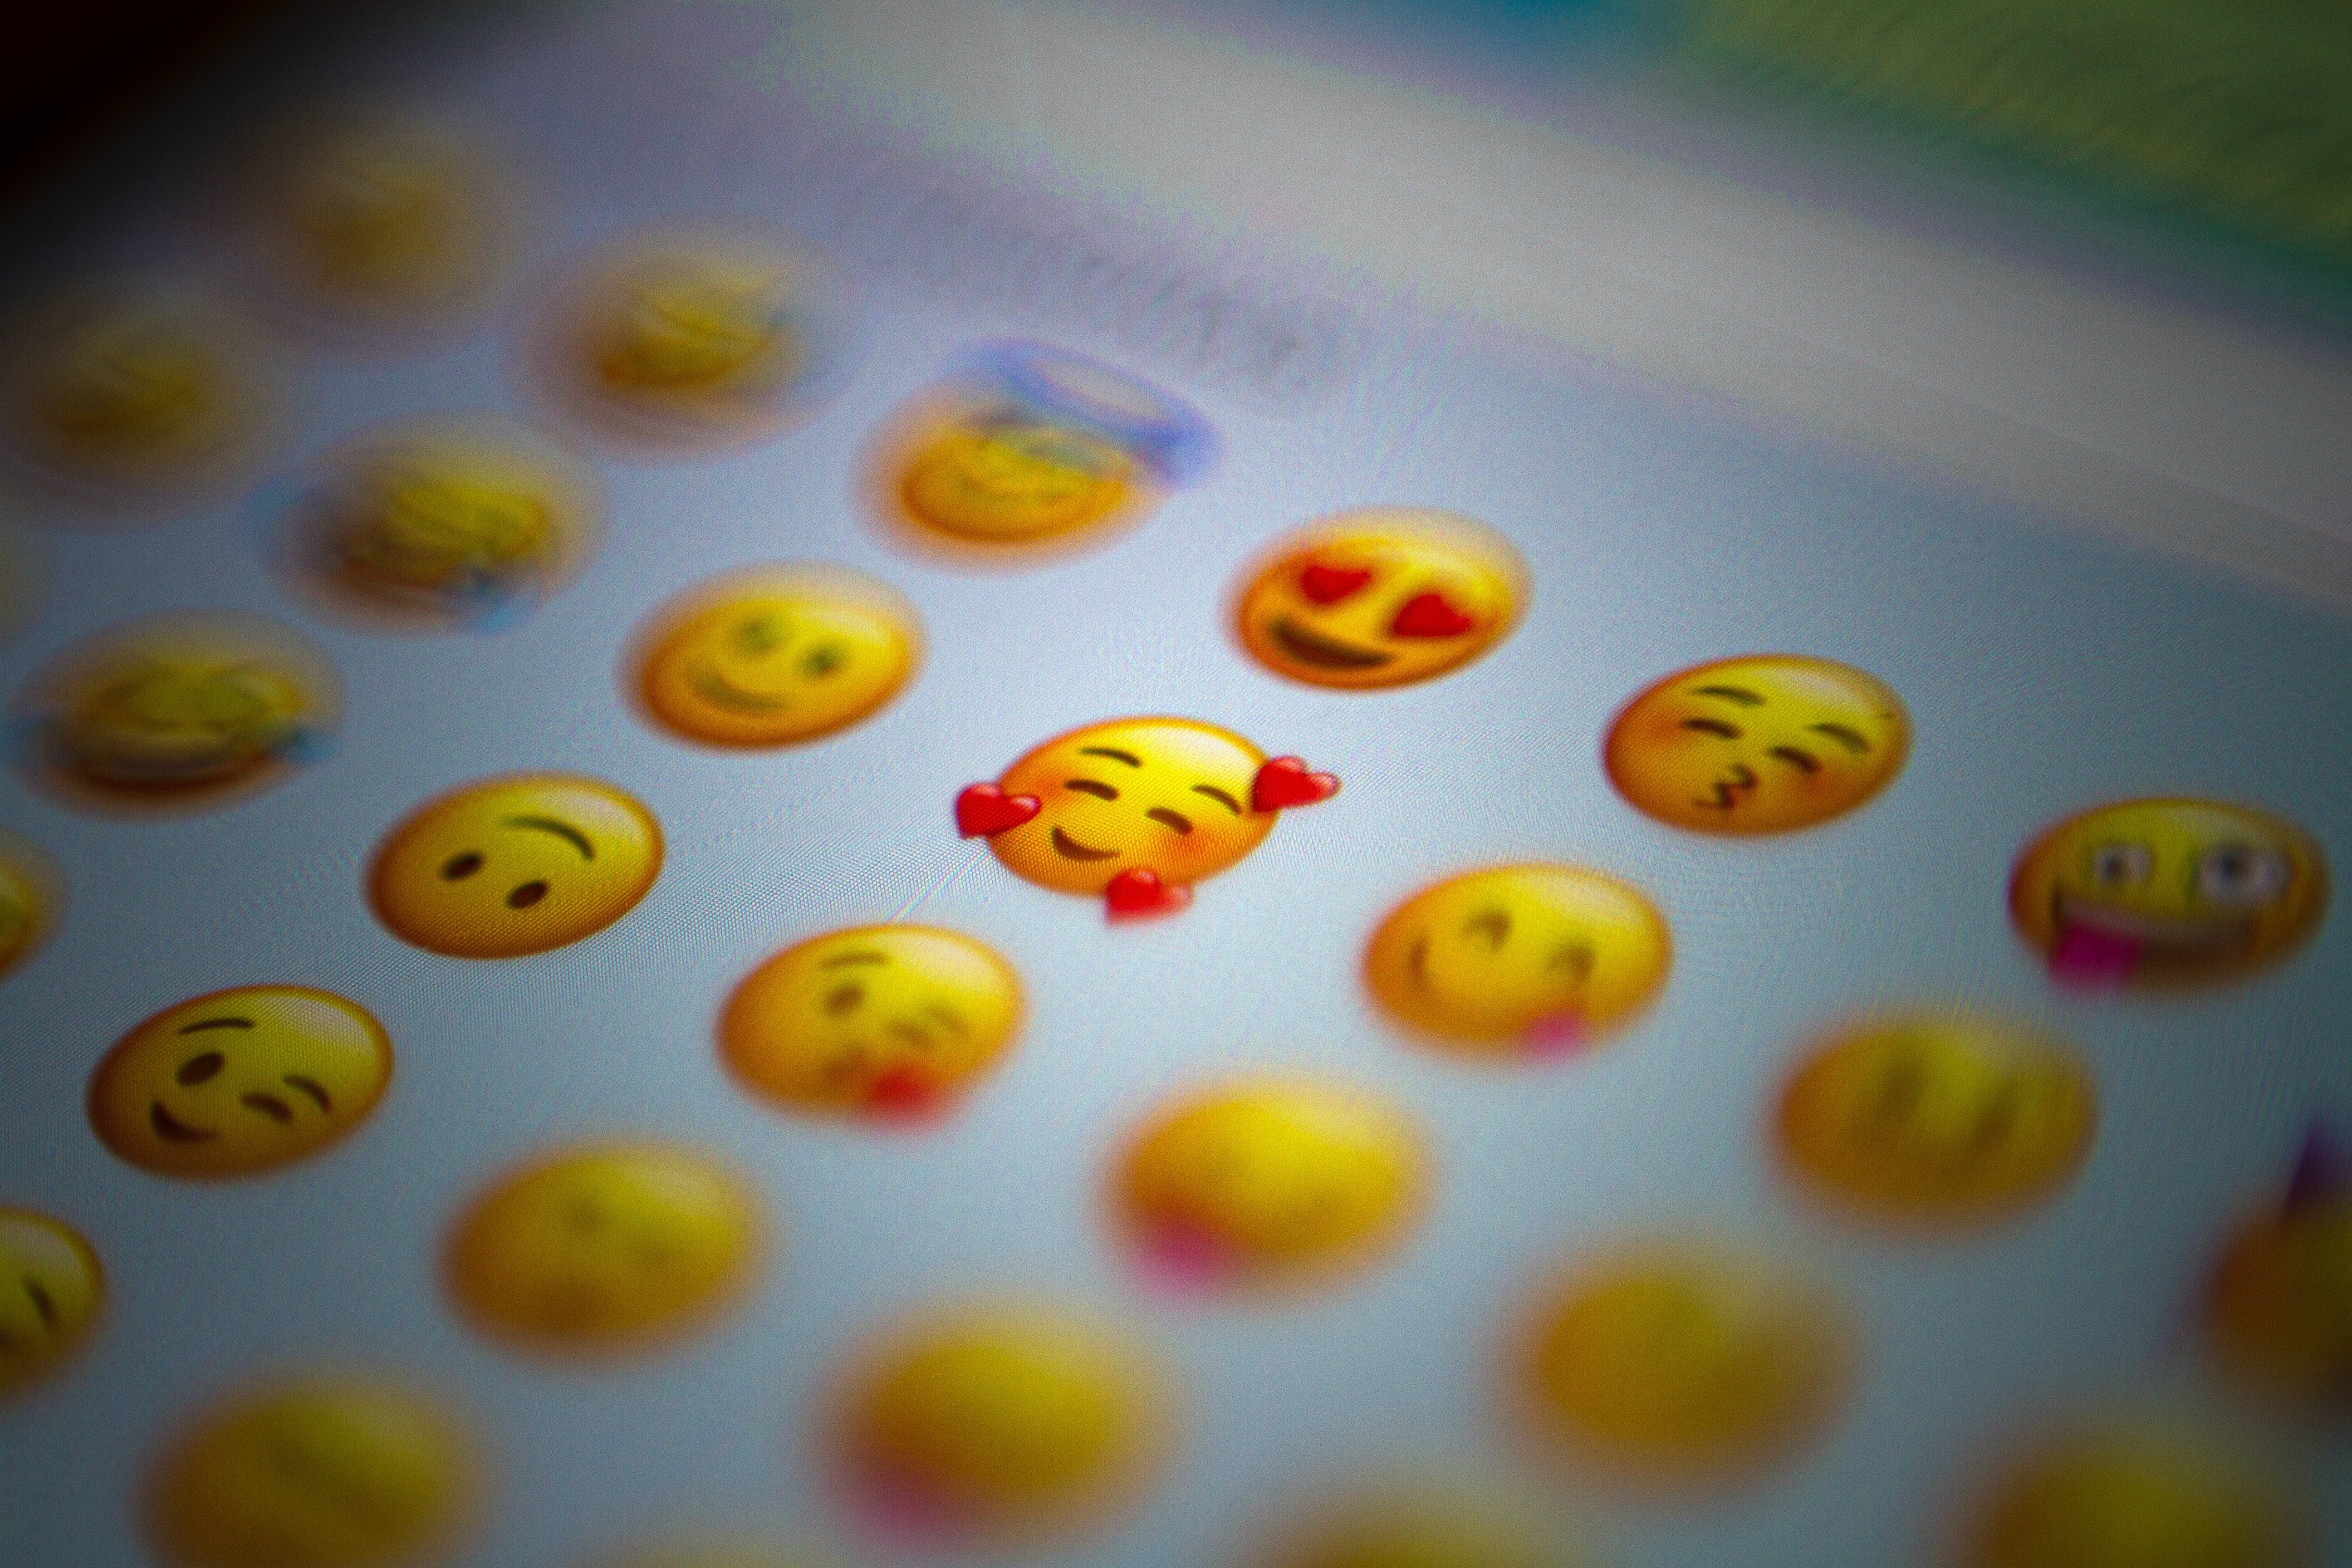 Què són i què signifiquen els emojis?